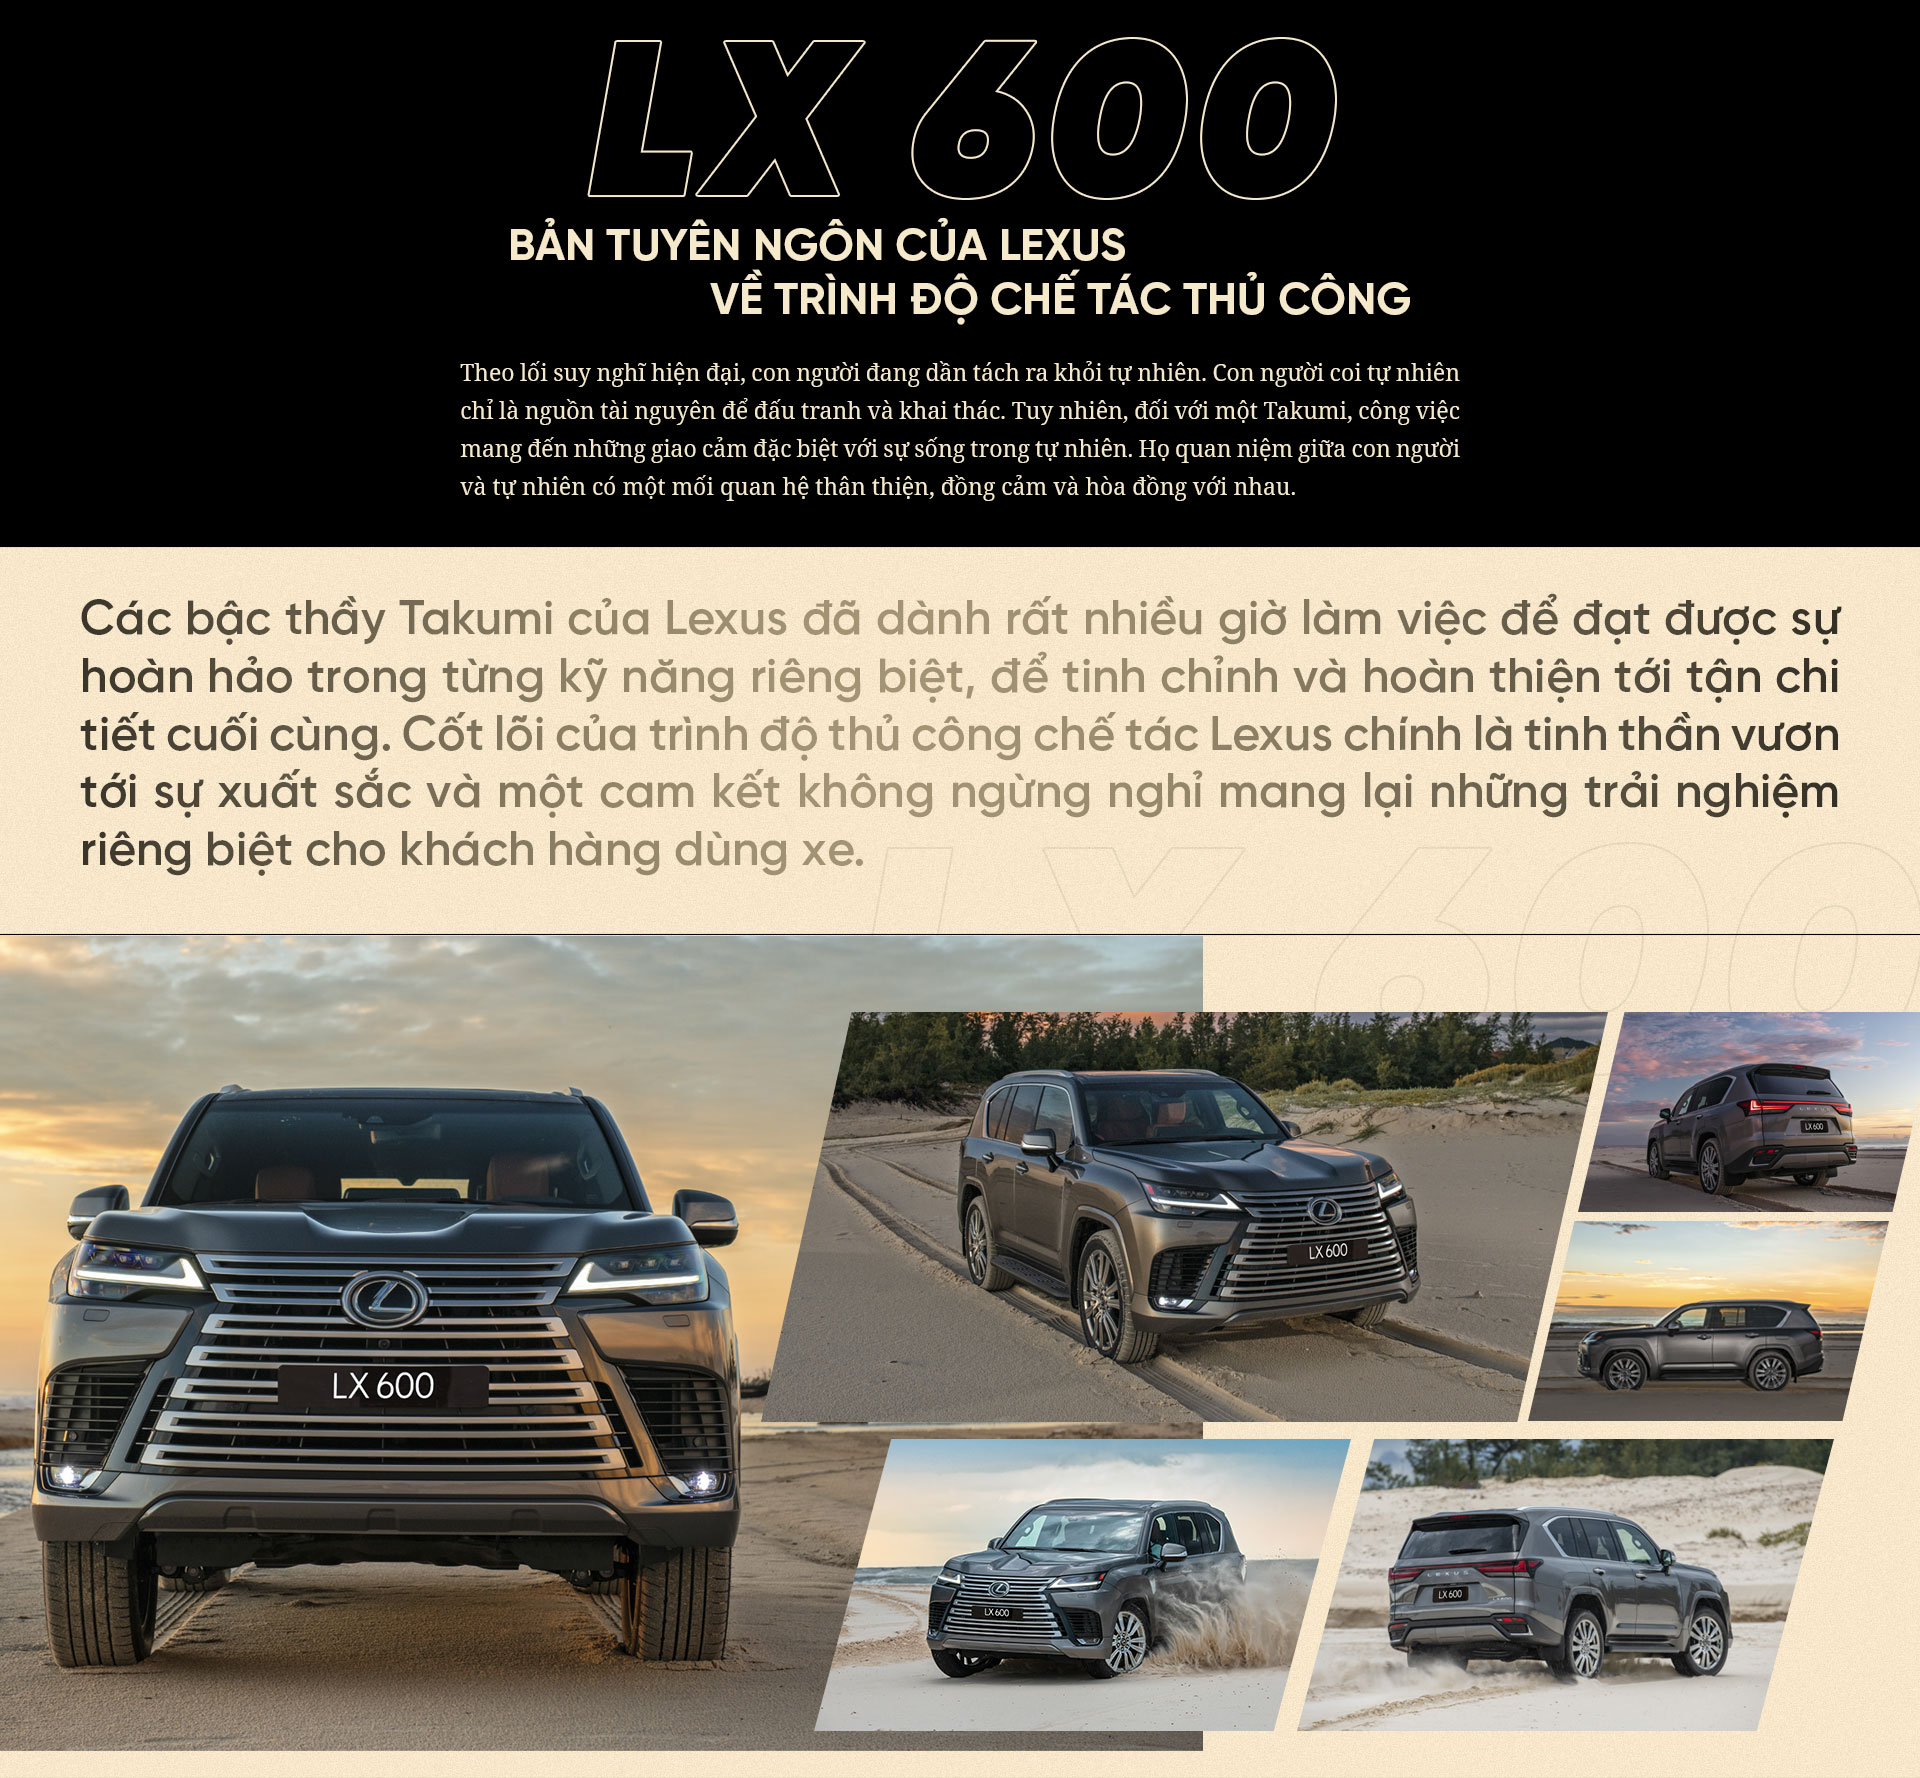 Lexus LX600 - Cỗ máy tinh hoa được thổi hồn bởi những Takumi bậc thầy - 2